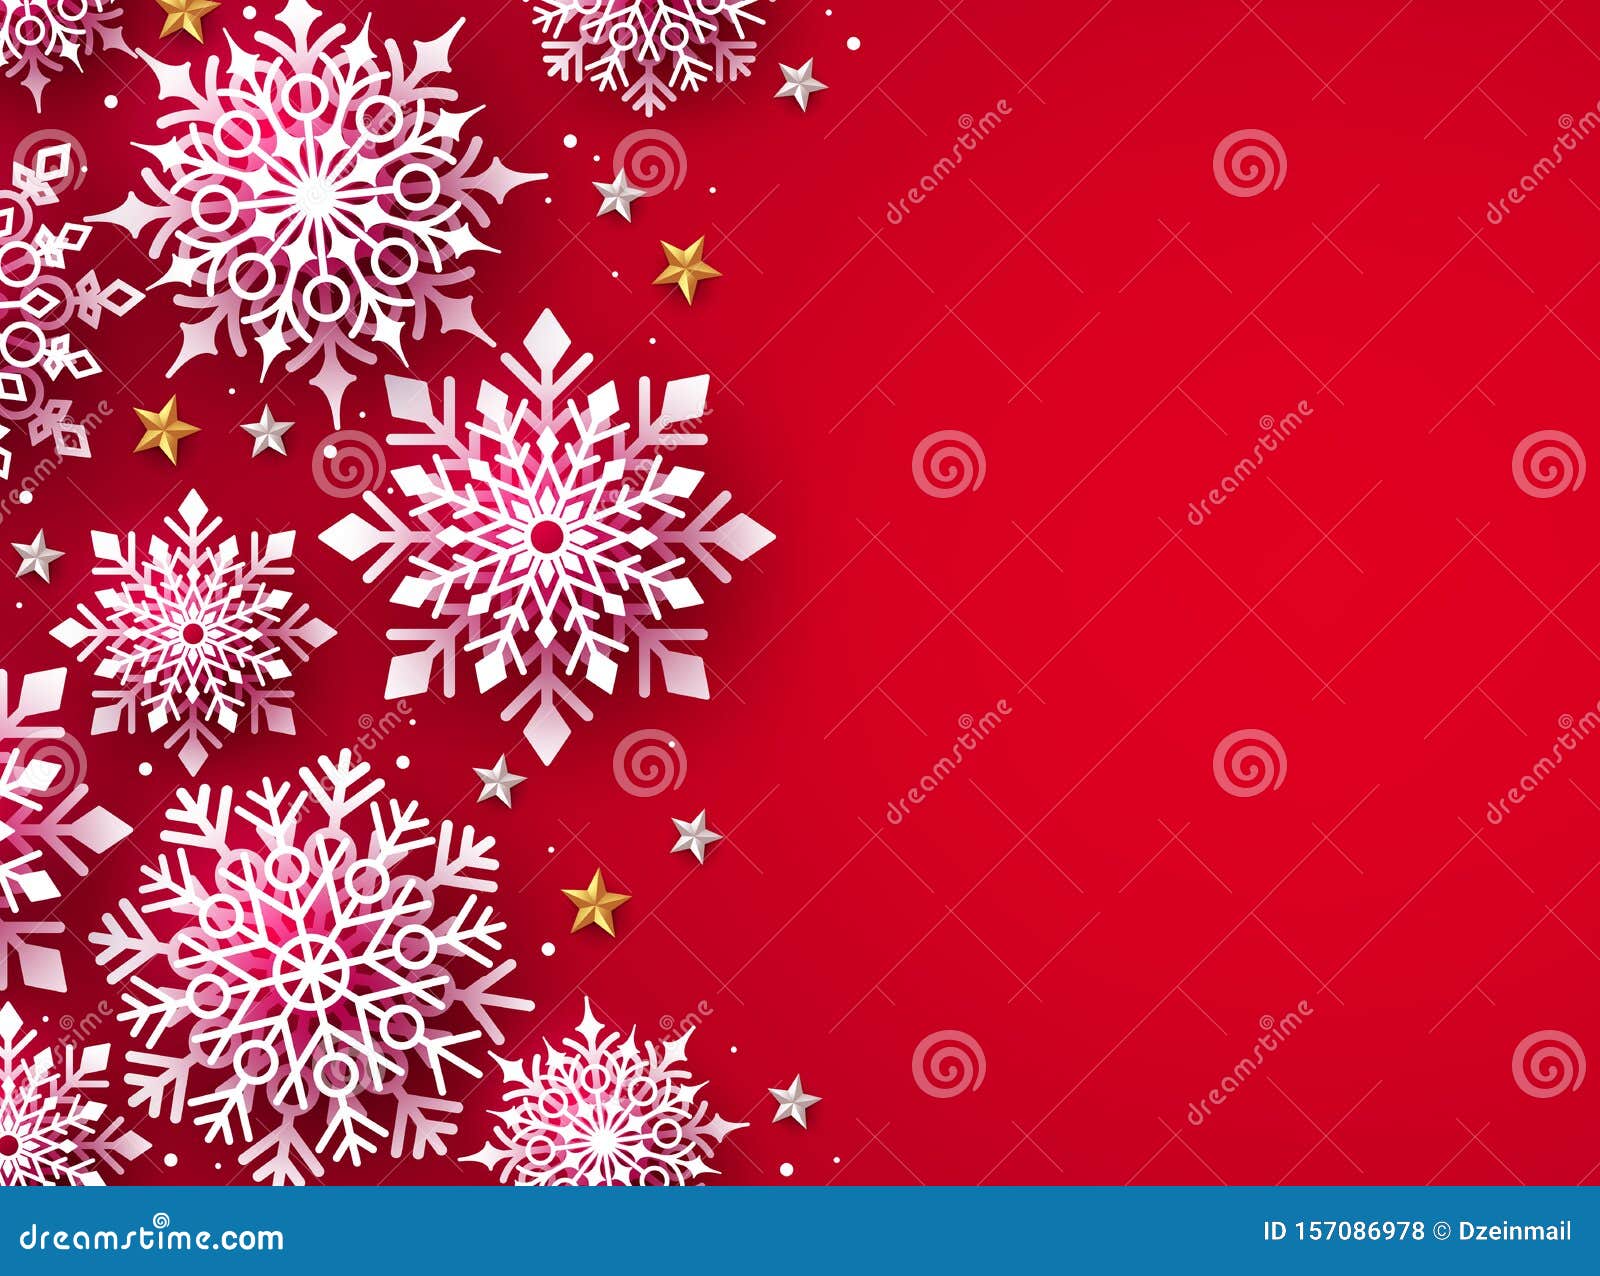 圣诞节矢和背景的冬天雪 圣诞雪花在红色背景下 向量例证 插画包括有